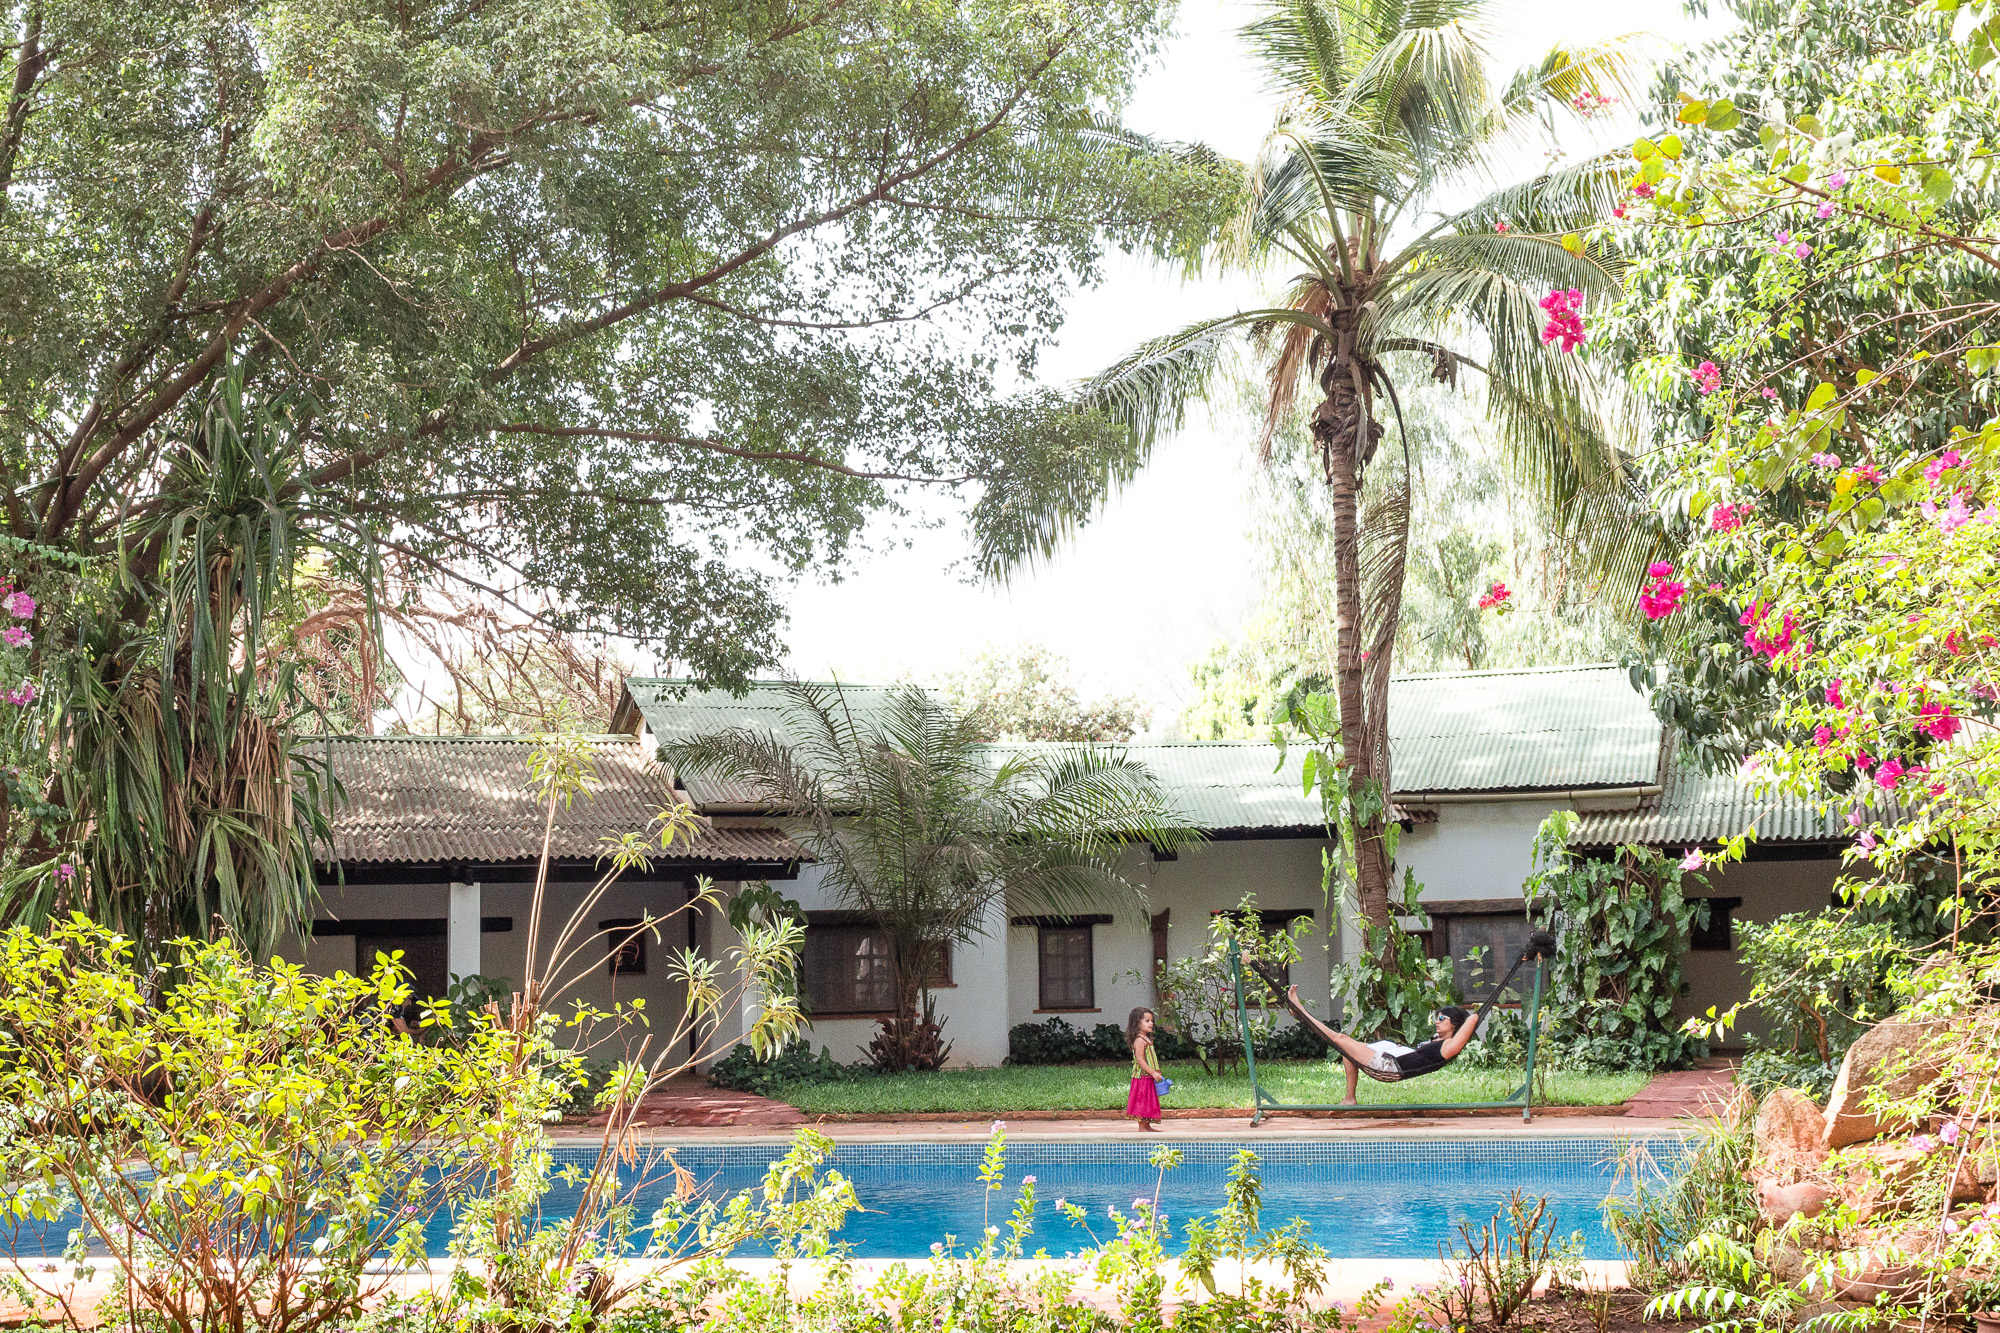 Hamac, piscine et végétation luxuriante de l'hôtel Canne à Sucre, Banfora, Burkina Faso